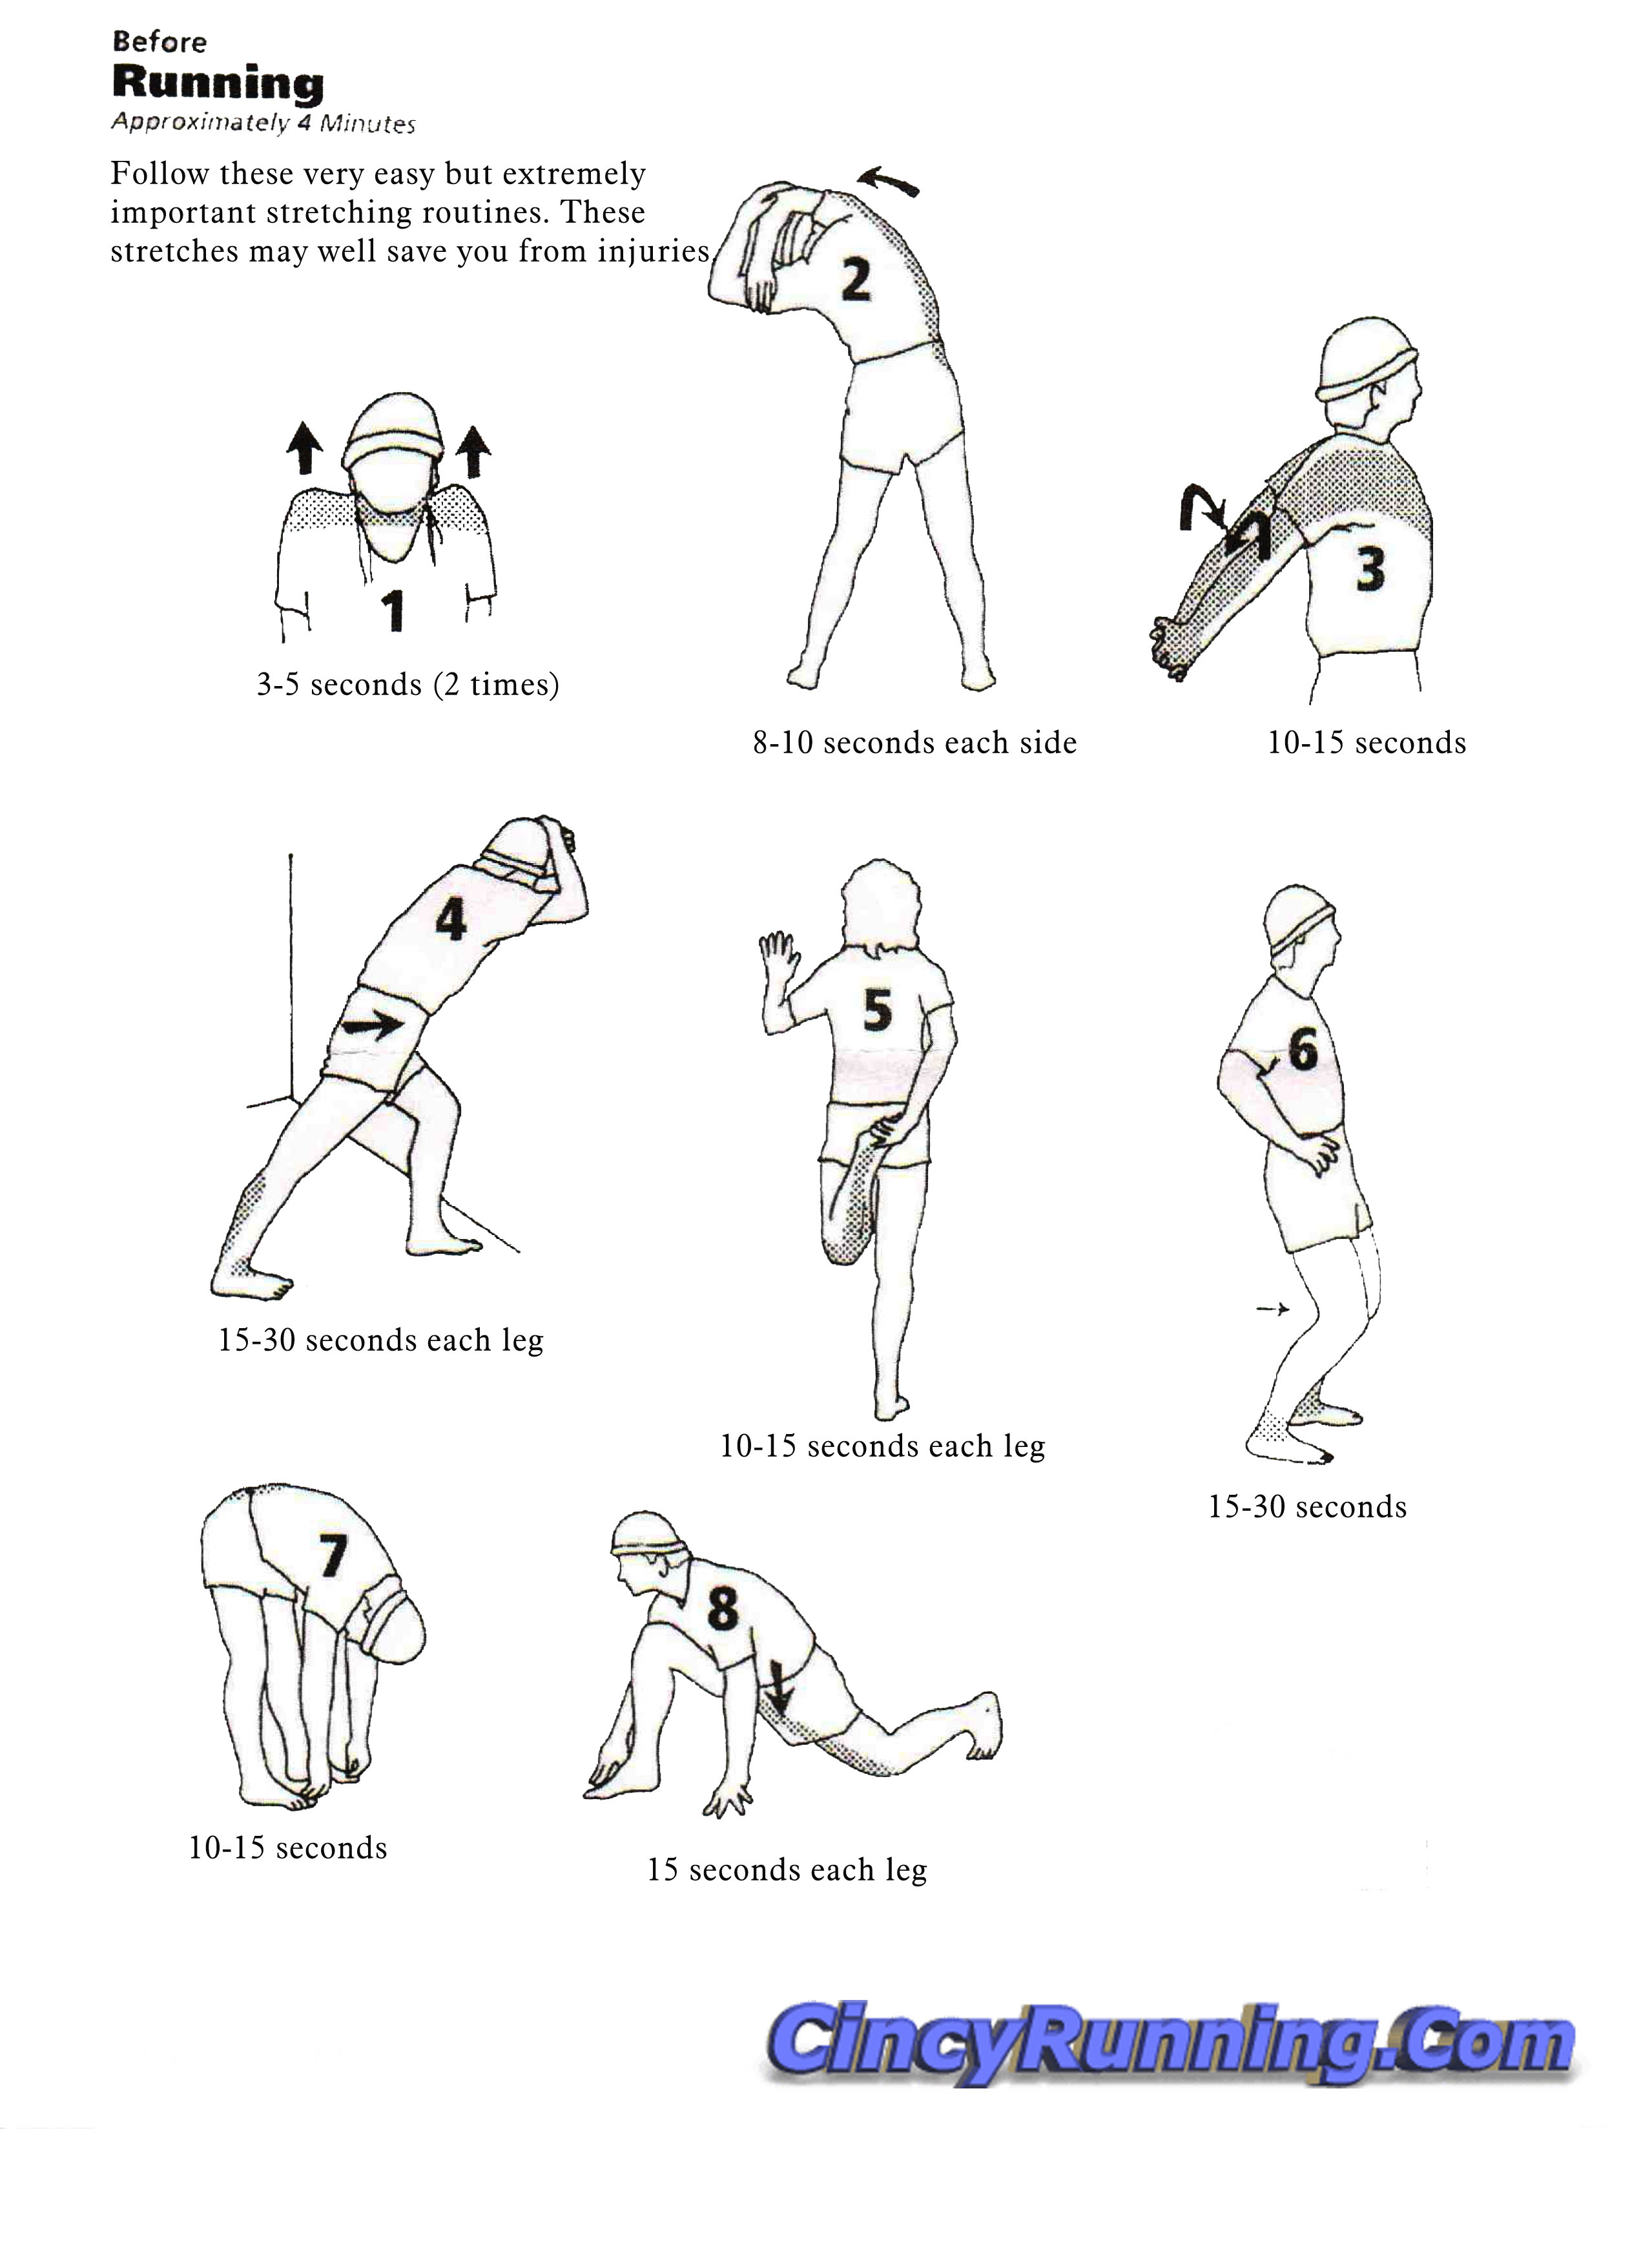 Stretch well before running | Cincyrunning